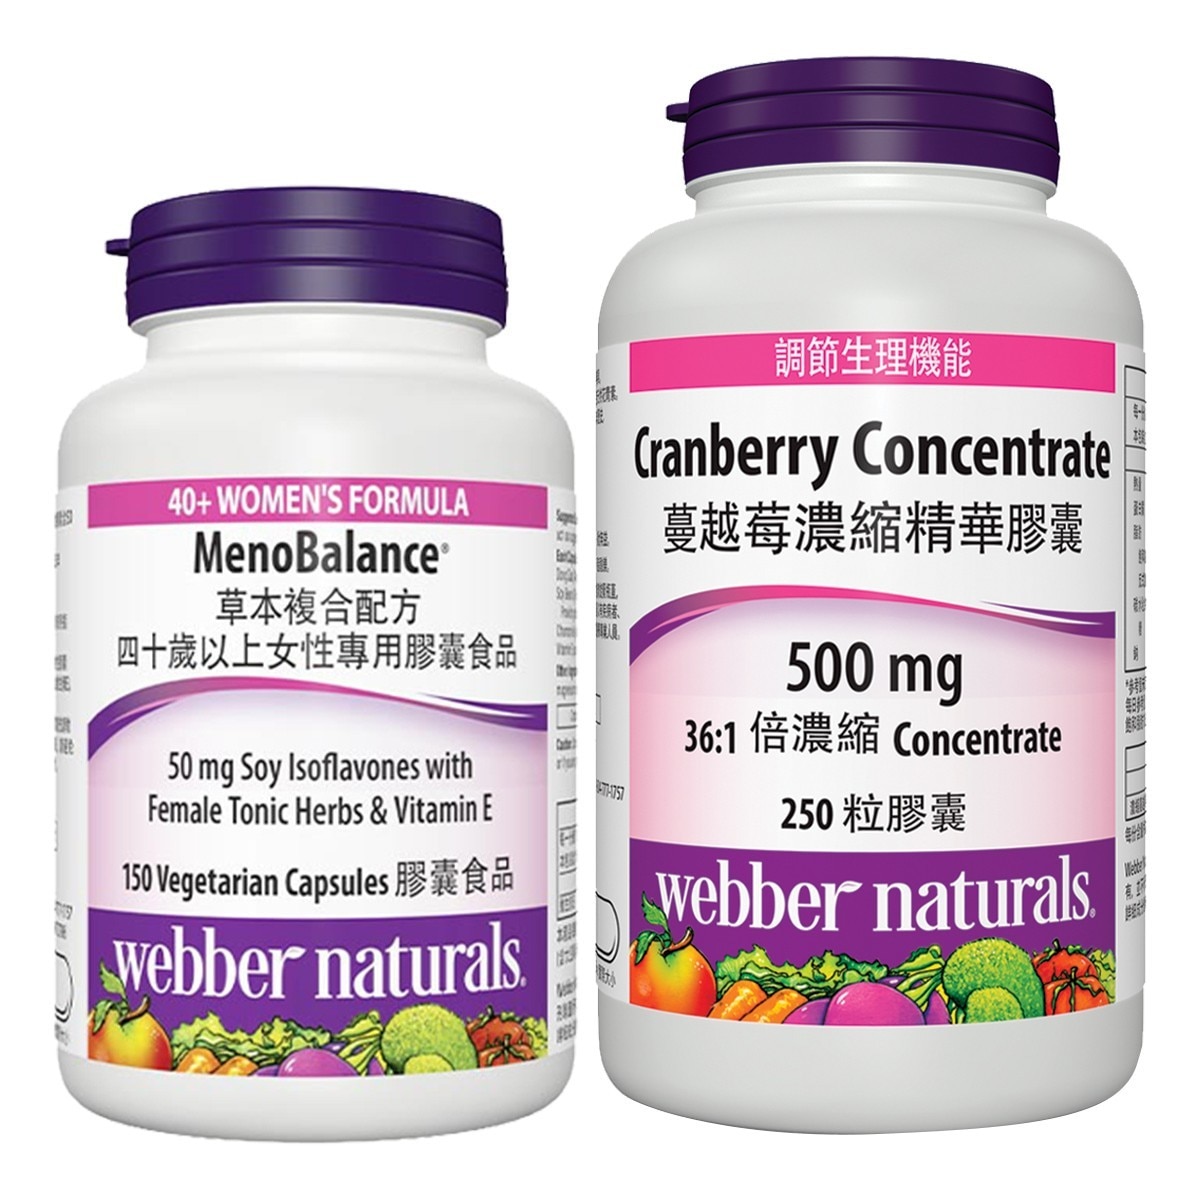 Webber Naturals 草本複合配方四十歲以上女性專用膠囊食品 150粒 & 蔓越莓濃縮精華膠囊 250粒